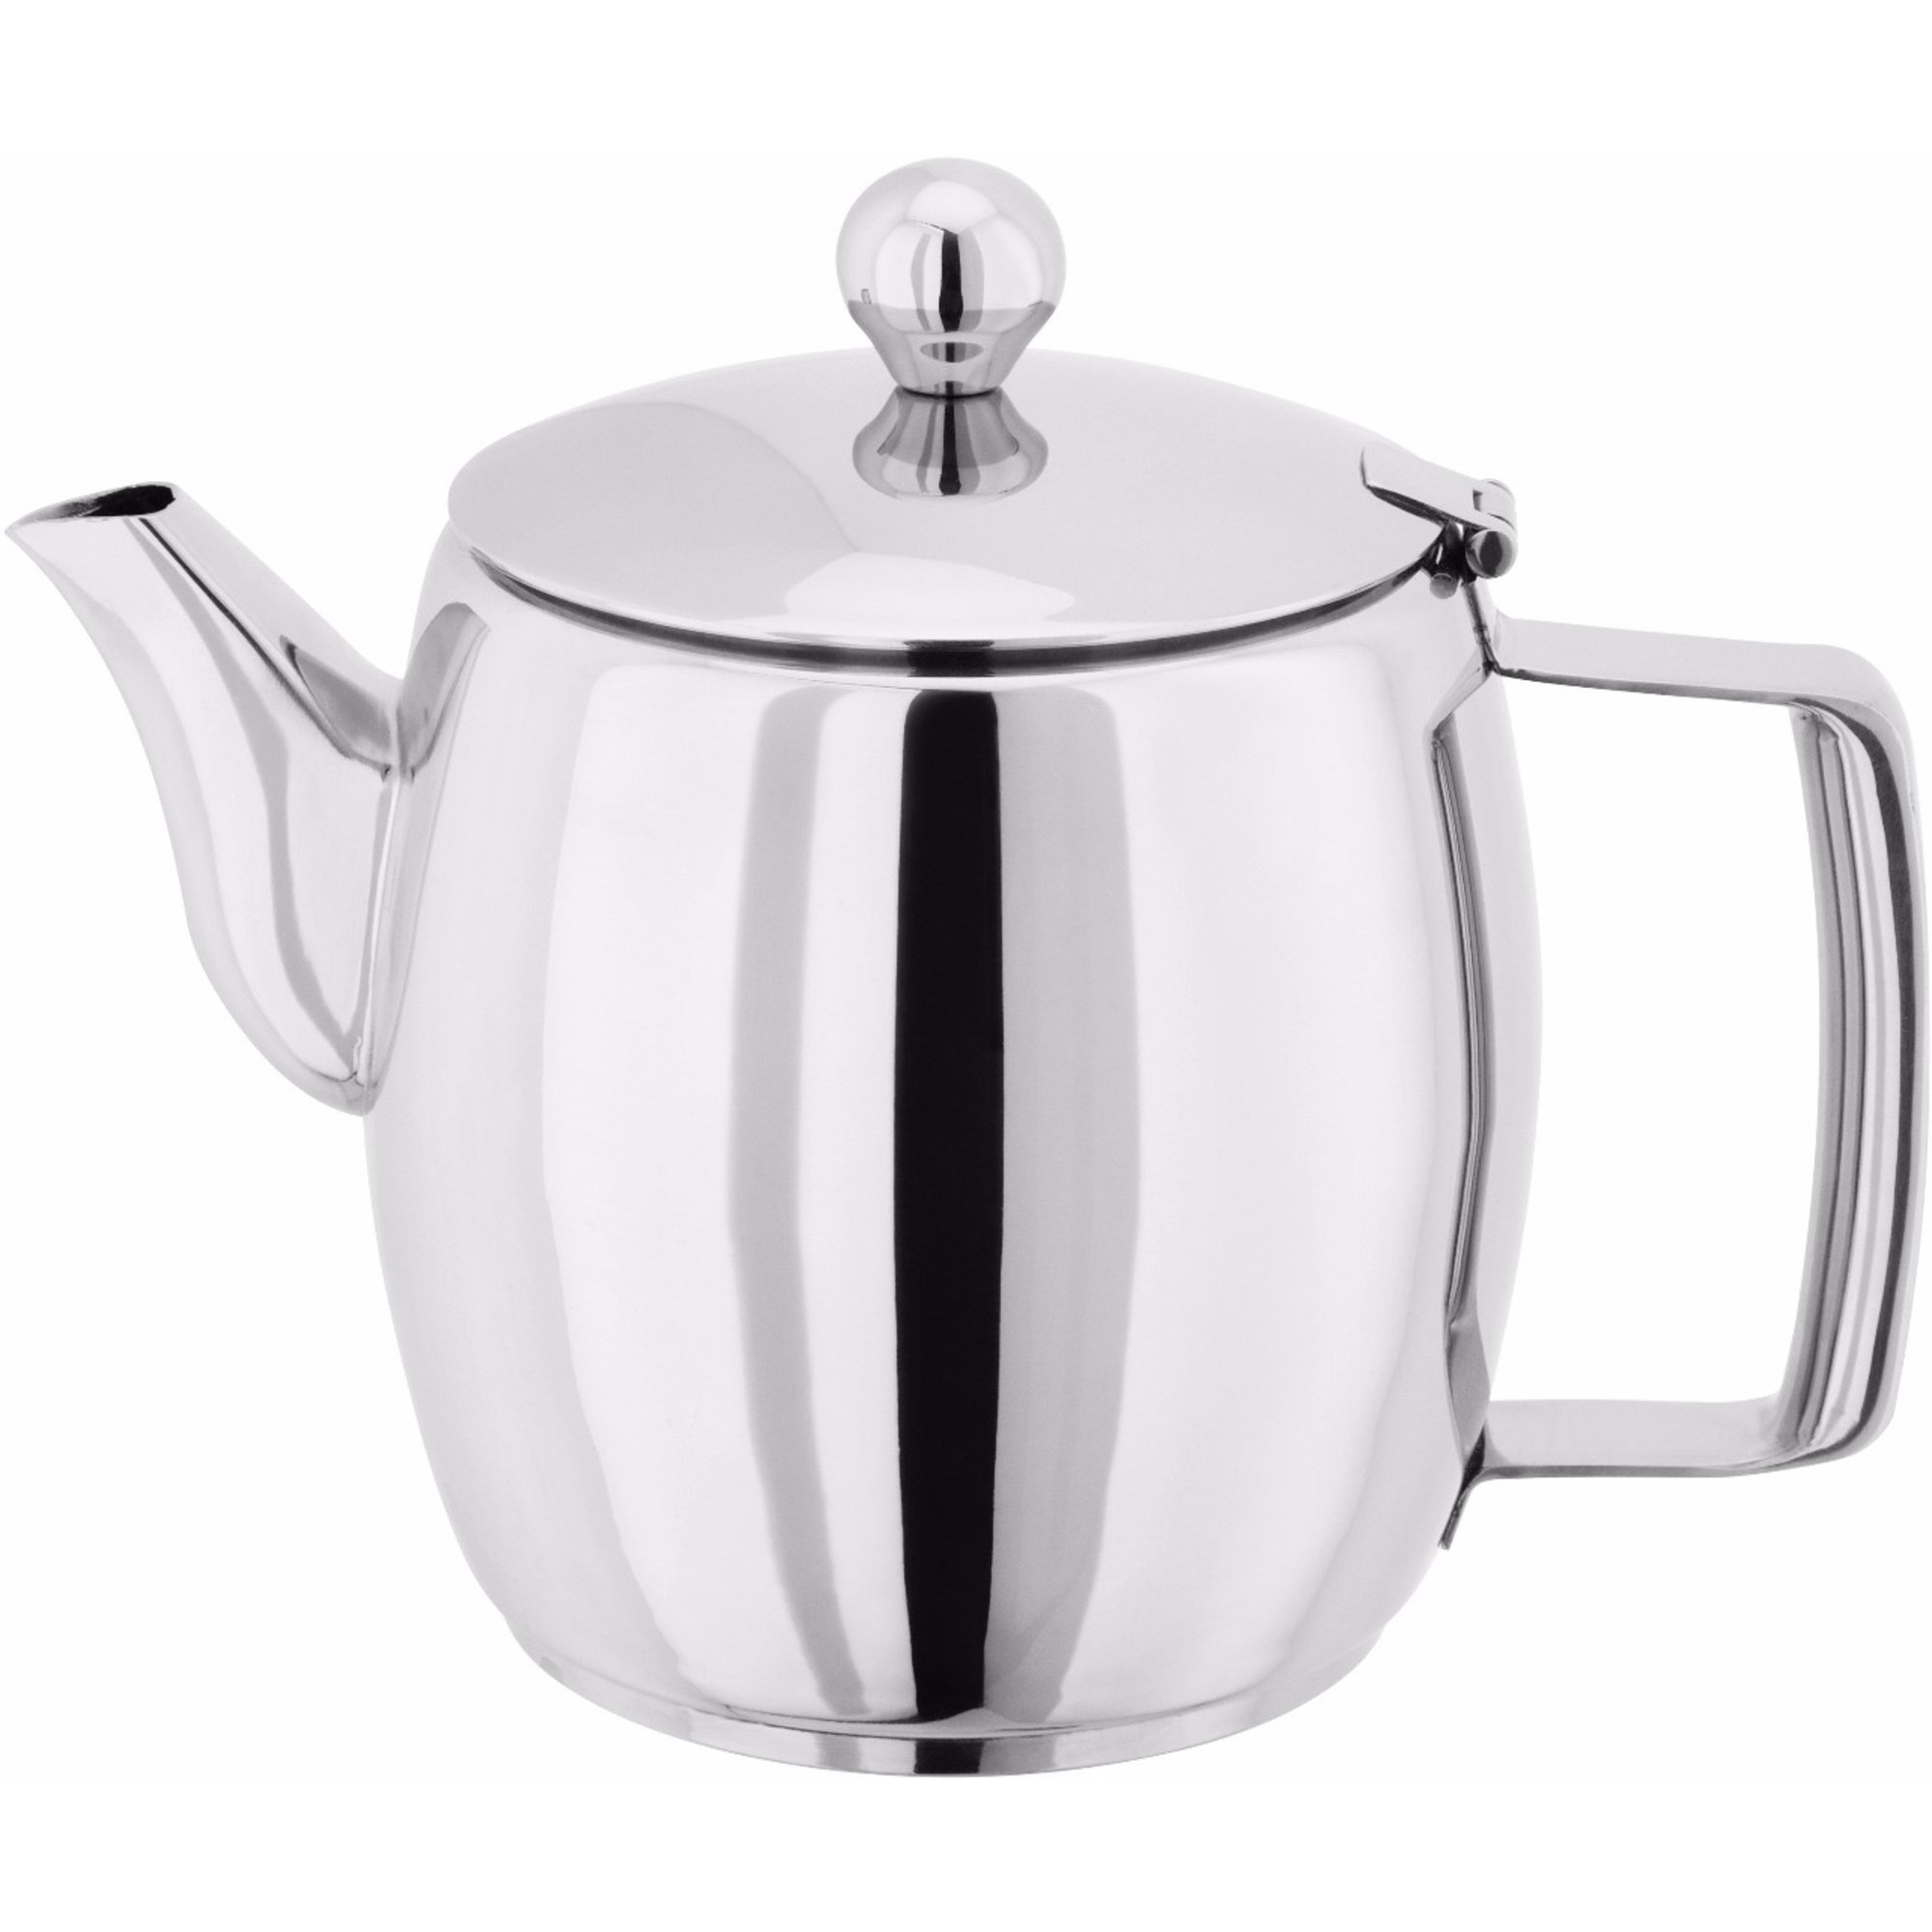 Horwood Teapot 1L 4 cup Hob Top